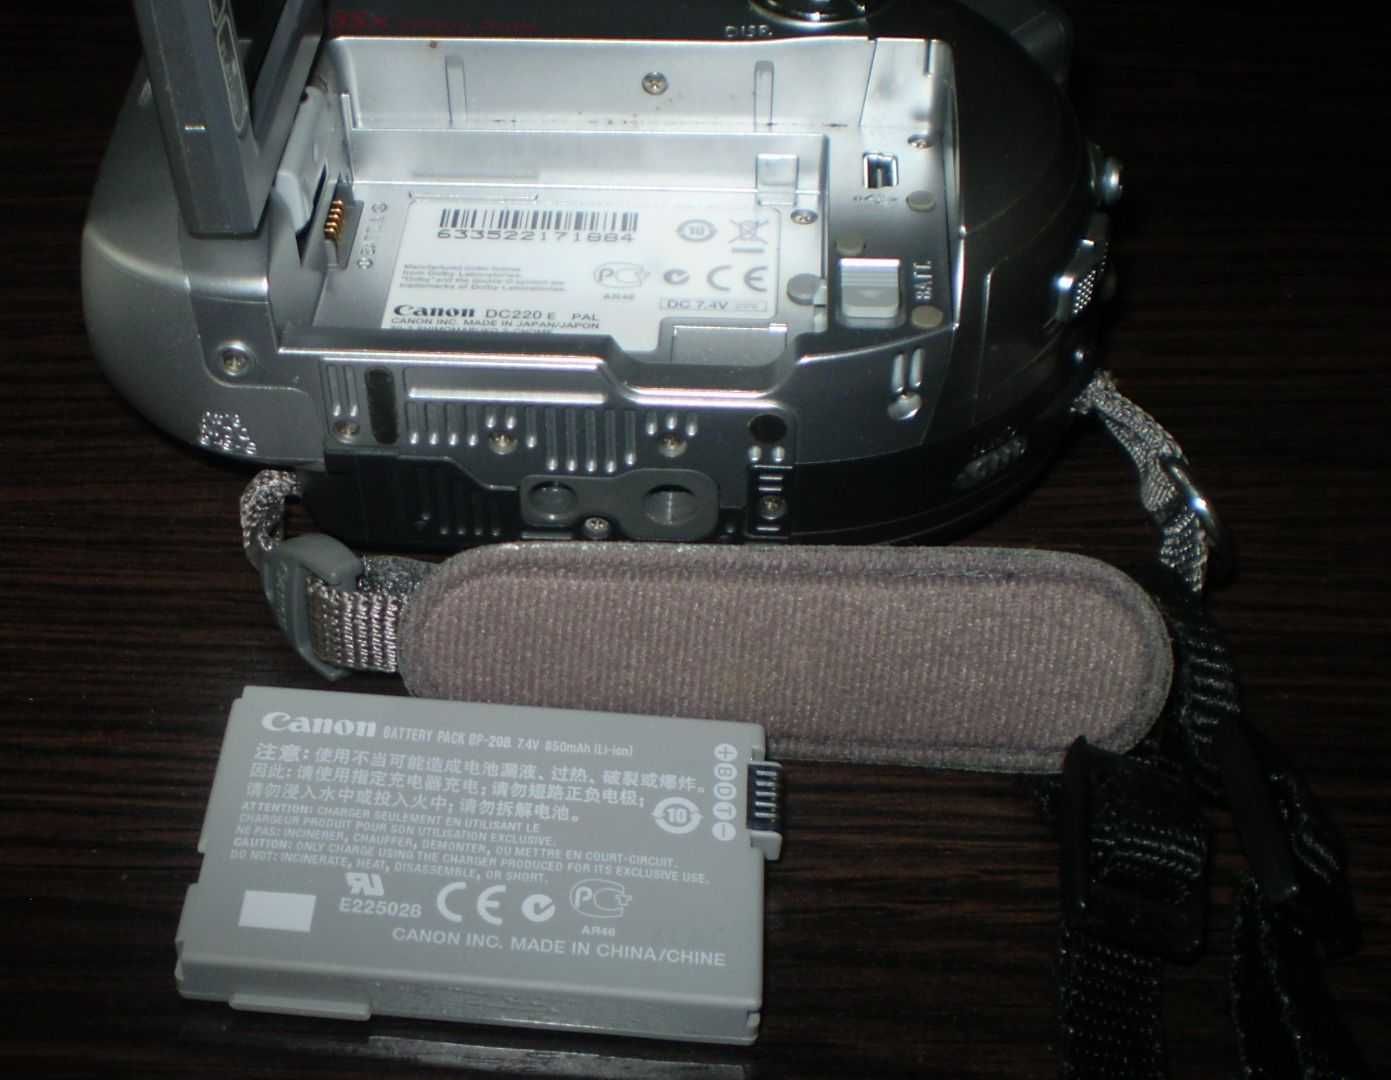 Видеокамера CANON DC 220 в коробке и Сумка для переноса видеокамеры.